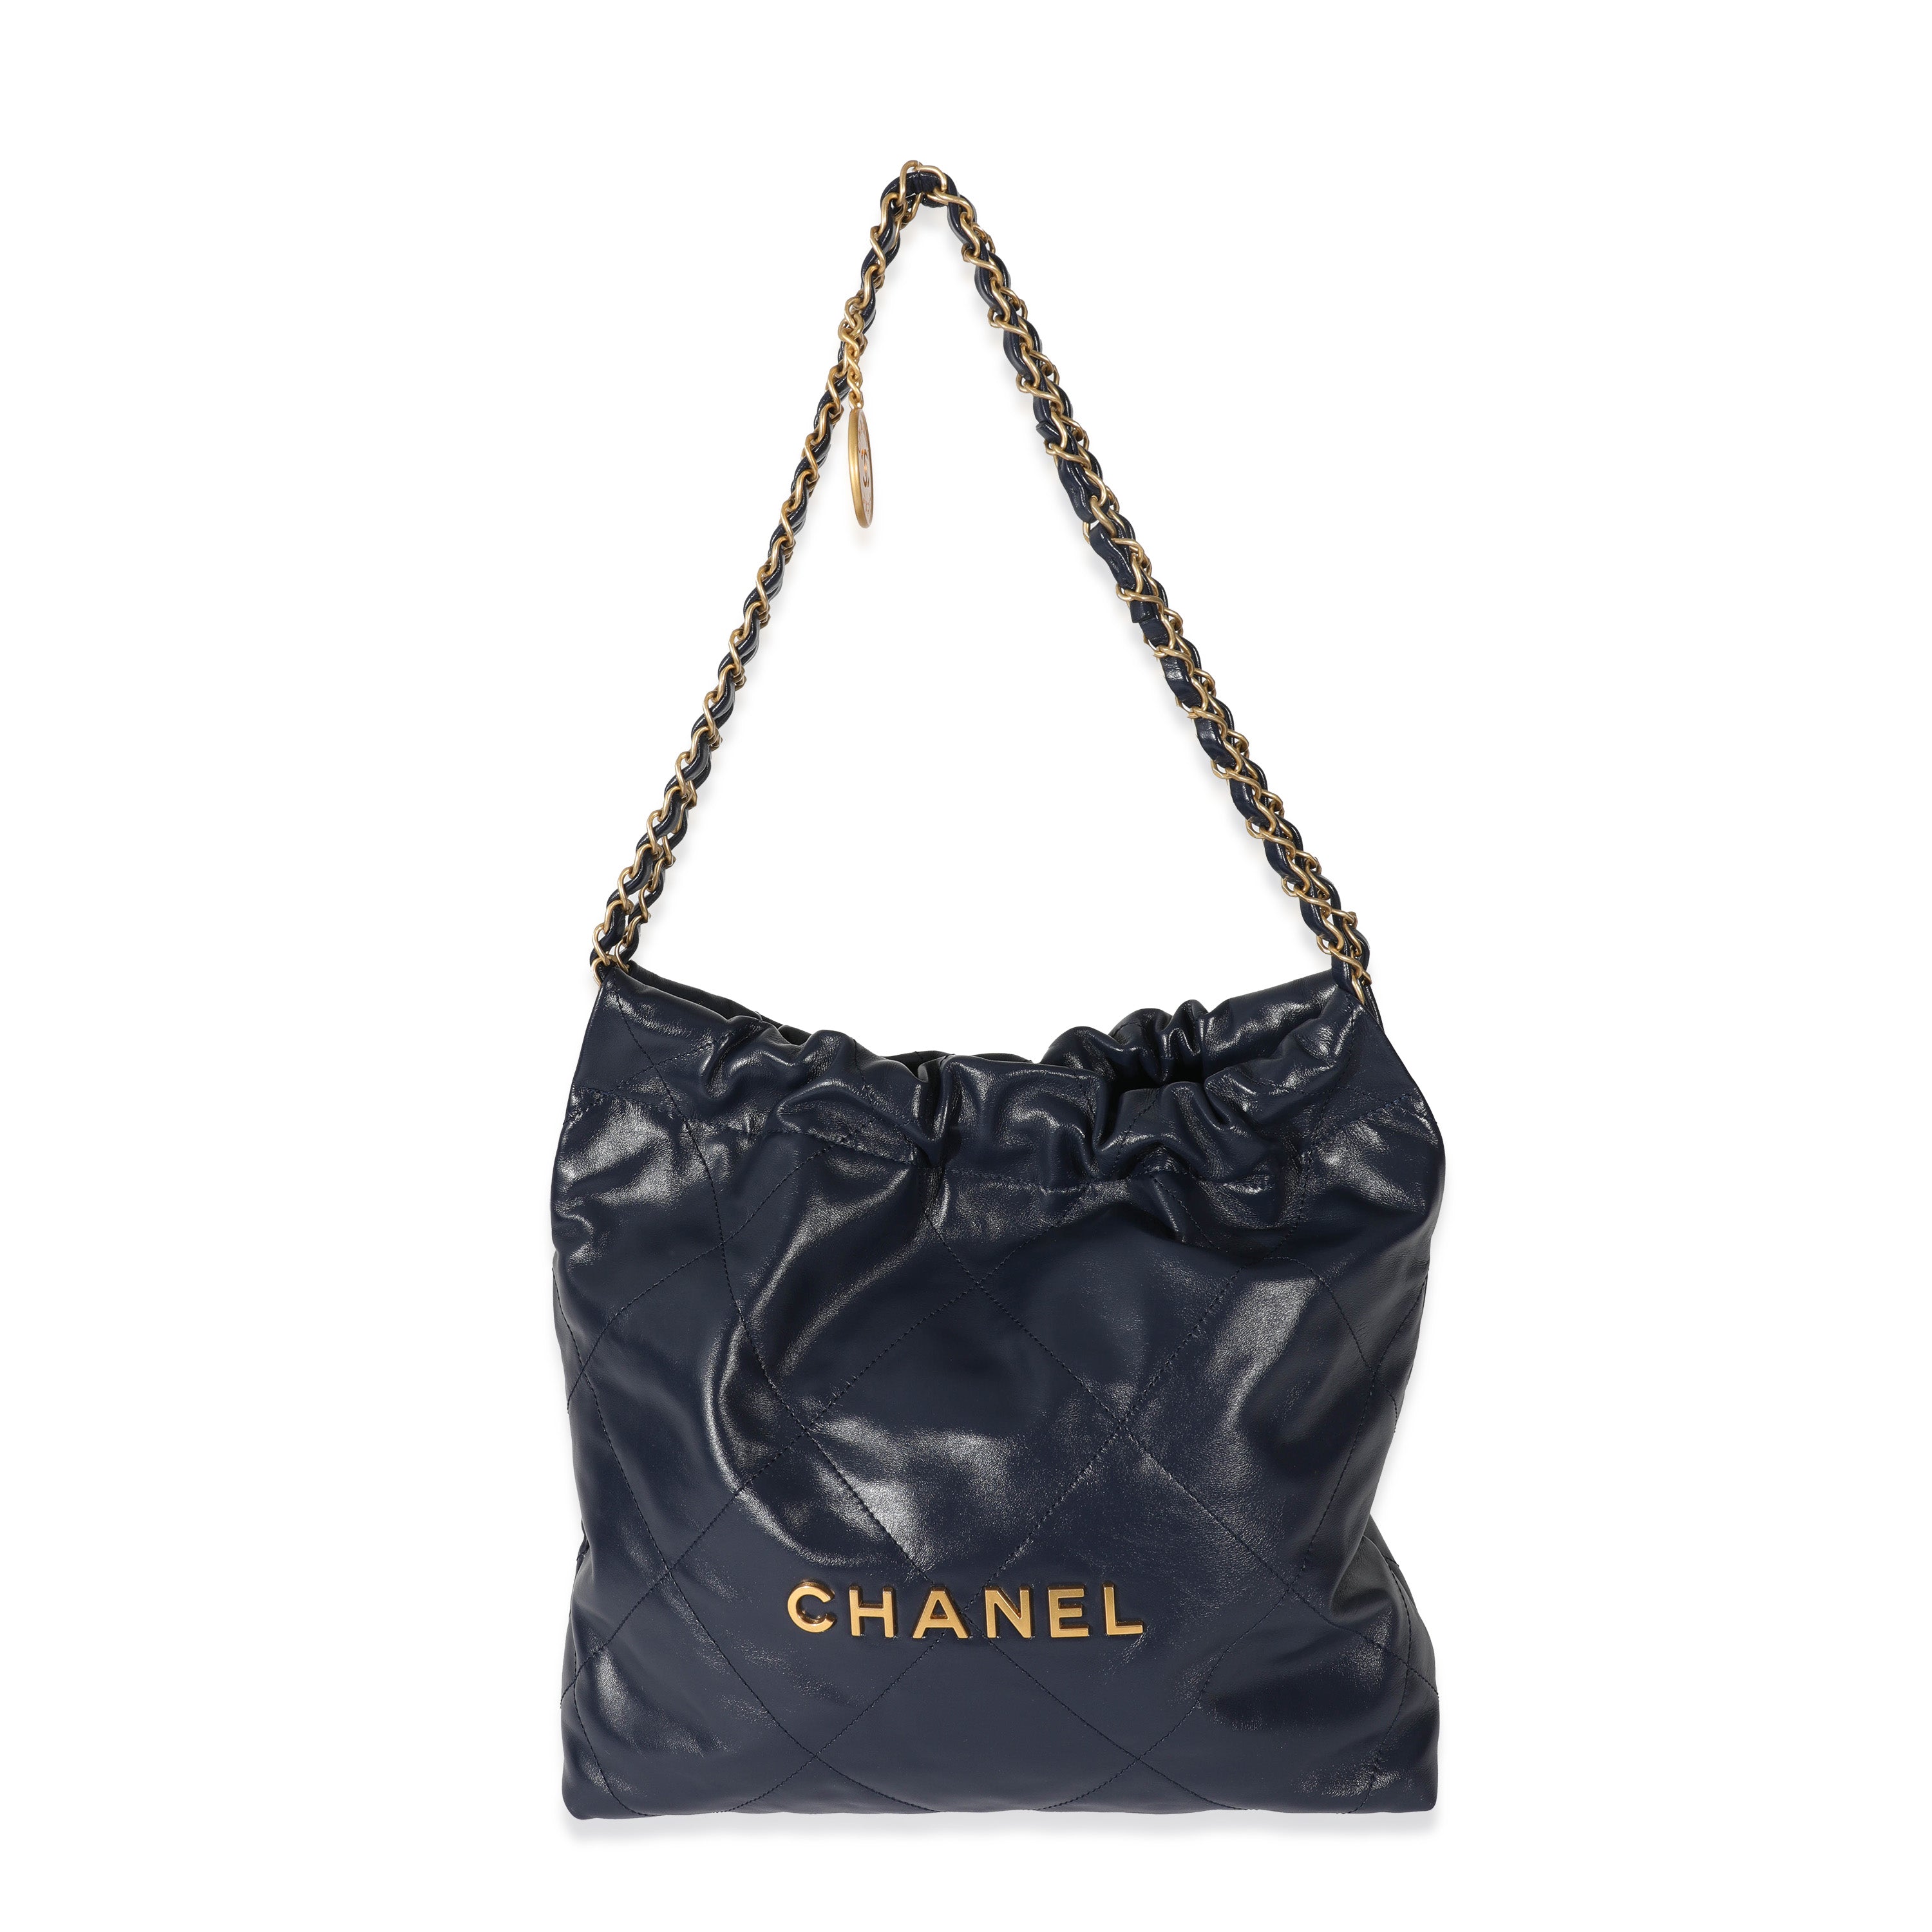 Chanel 22 Handbag Large 22S Calfskin Black/White Logo in Calfskin